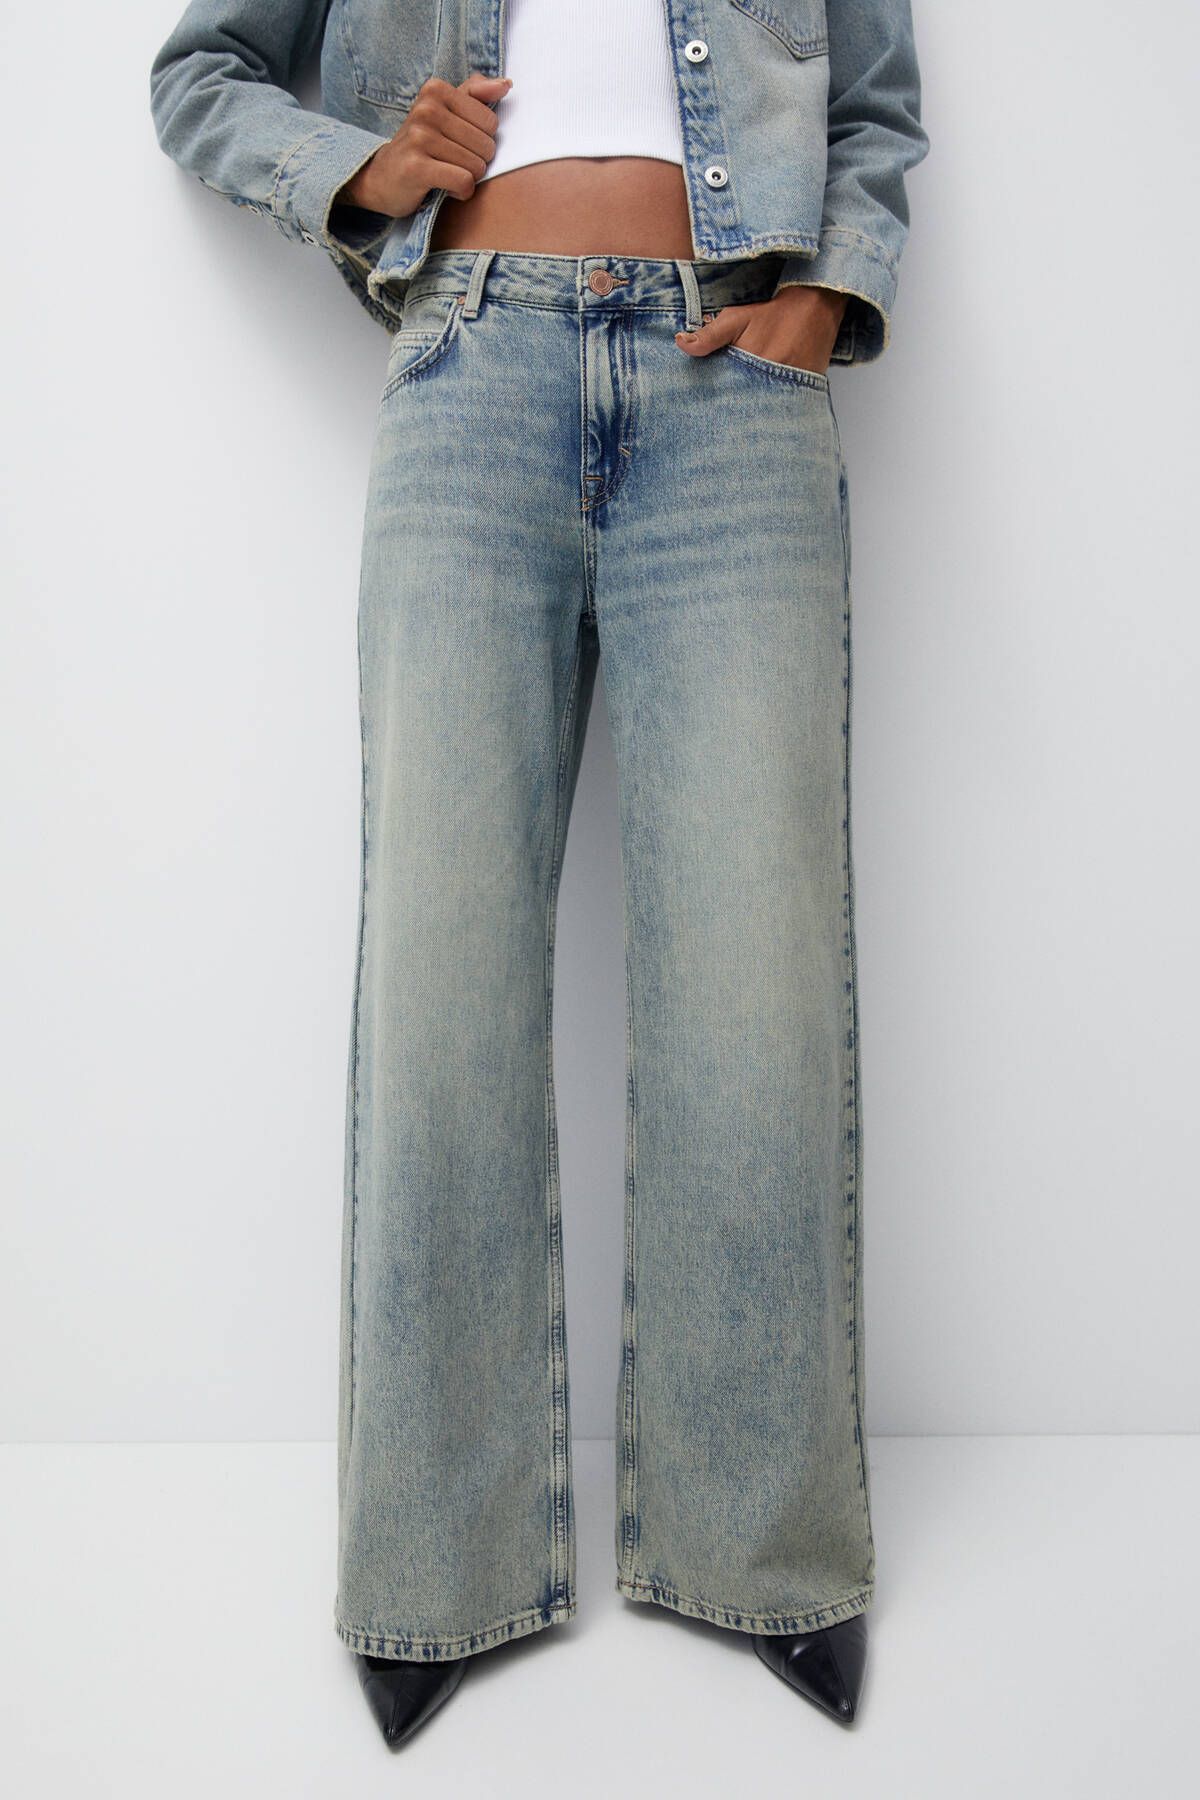 Pull & Bear شلوار جین گشاد سایز بزرگ